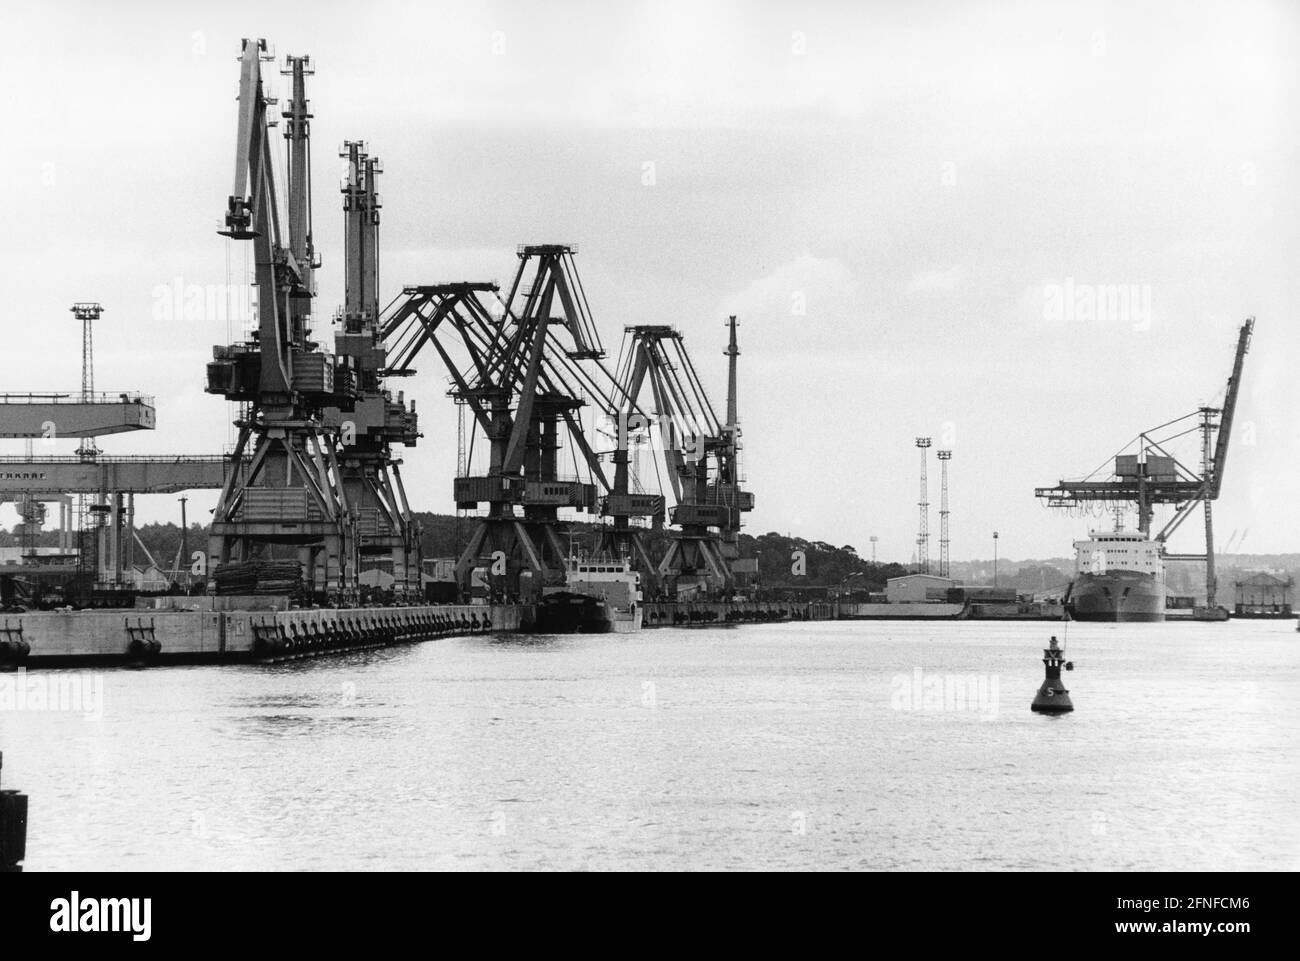 Nel cantiere Rostock si possono vedere le gru e sullo sfondo una nave che viene scaricata. Sul canale boe mostrare la strada. Il porto d'oltremare di Rostock è stato ampliato tra il 1957 e il 1960 e investito nell'industria dei cantieri navali. [traduzione automatizzata] Foto Stock